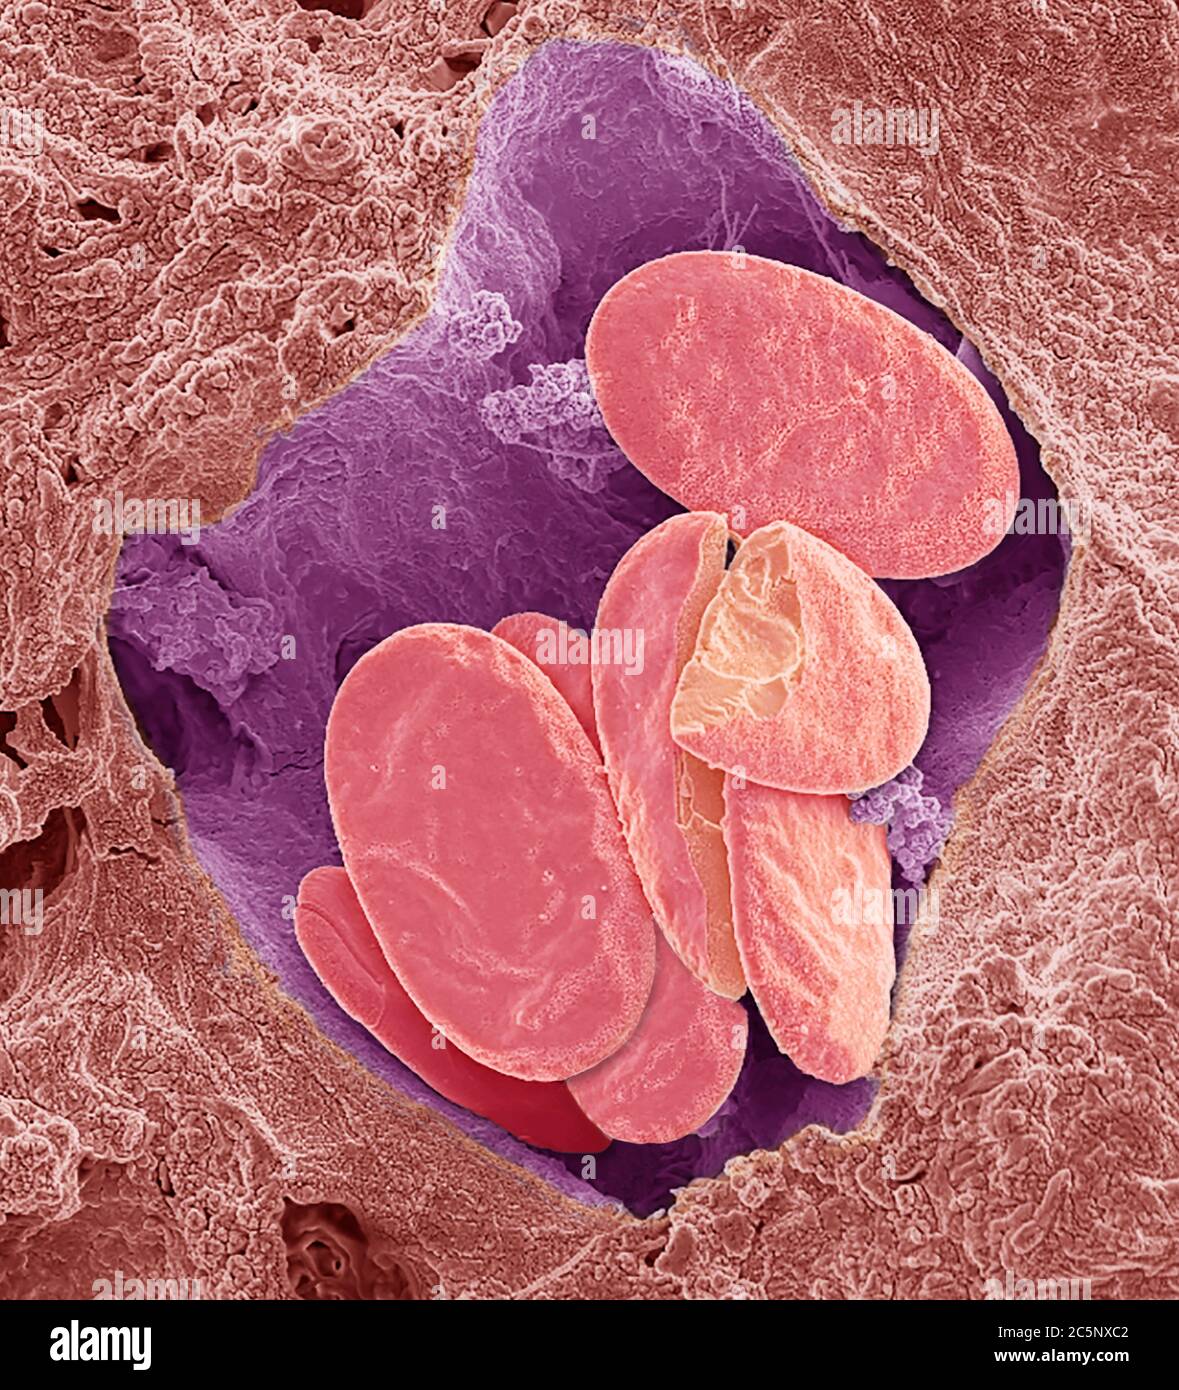 Schlange rote Blutkörperchen. Farbiger Rasterelektronenmikrograph (SEM) von ganzen und gebrochenen roten Blutkörperchen (Erythrozyten, rot) in einem kleinen Blutgefäß einer Schlange. Diese Zellen enthalten Hämoglobin, ein Pigment, das es ihnen ermöglicht, Sauerstoff um den Körper zu transportieren. Nicht-Säugetier rote Blutkörperchen (wie diese) sind oval (discoid) in Form und enthalten einen Zellkern. Menschliche rote Blutkörperchen sind scheibenförmig und haben keinen Zellkern. Vergrößerung: x3000 bei 10 Zentimeter Breite. Stockfoto